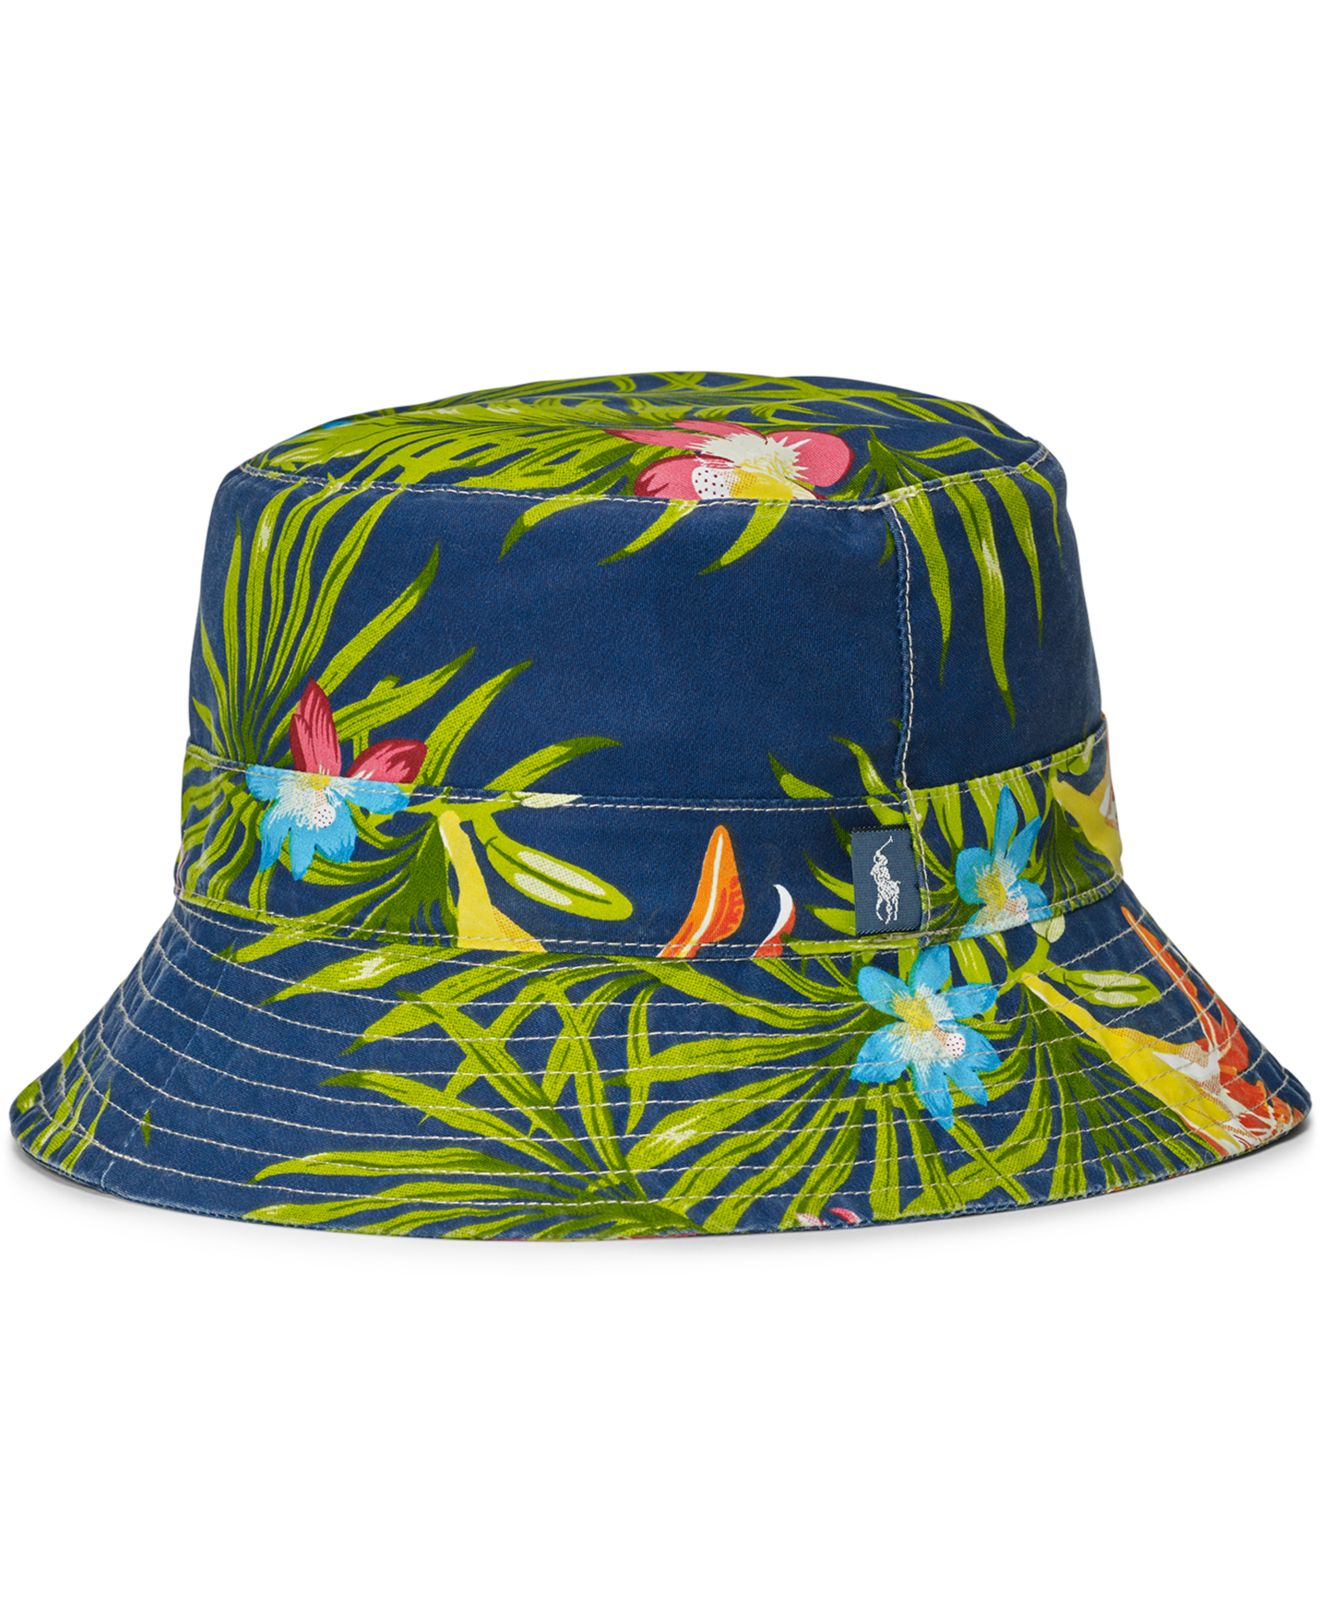 Lyst - Polo Ralph Lauren Men's Floral-print Bucket Hat for Men